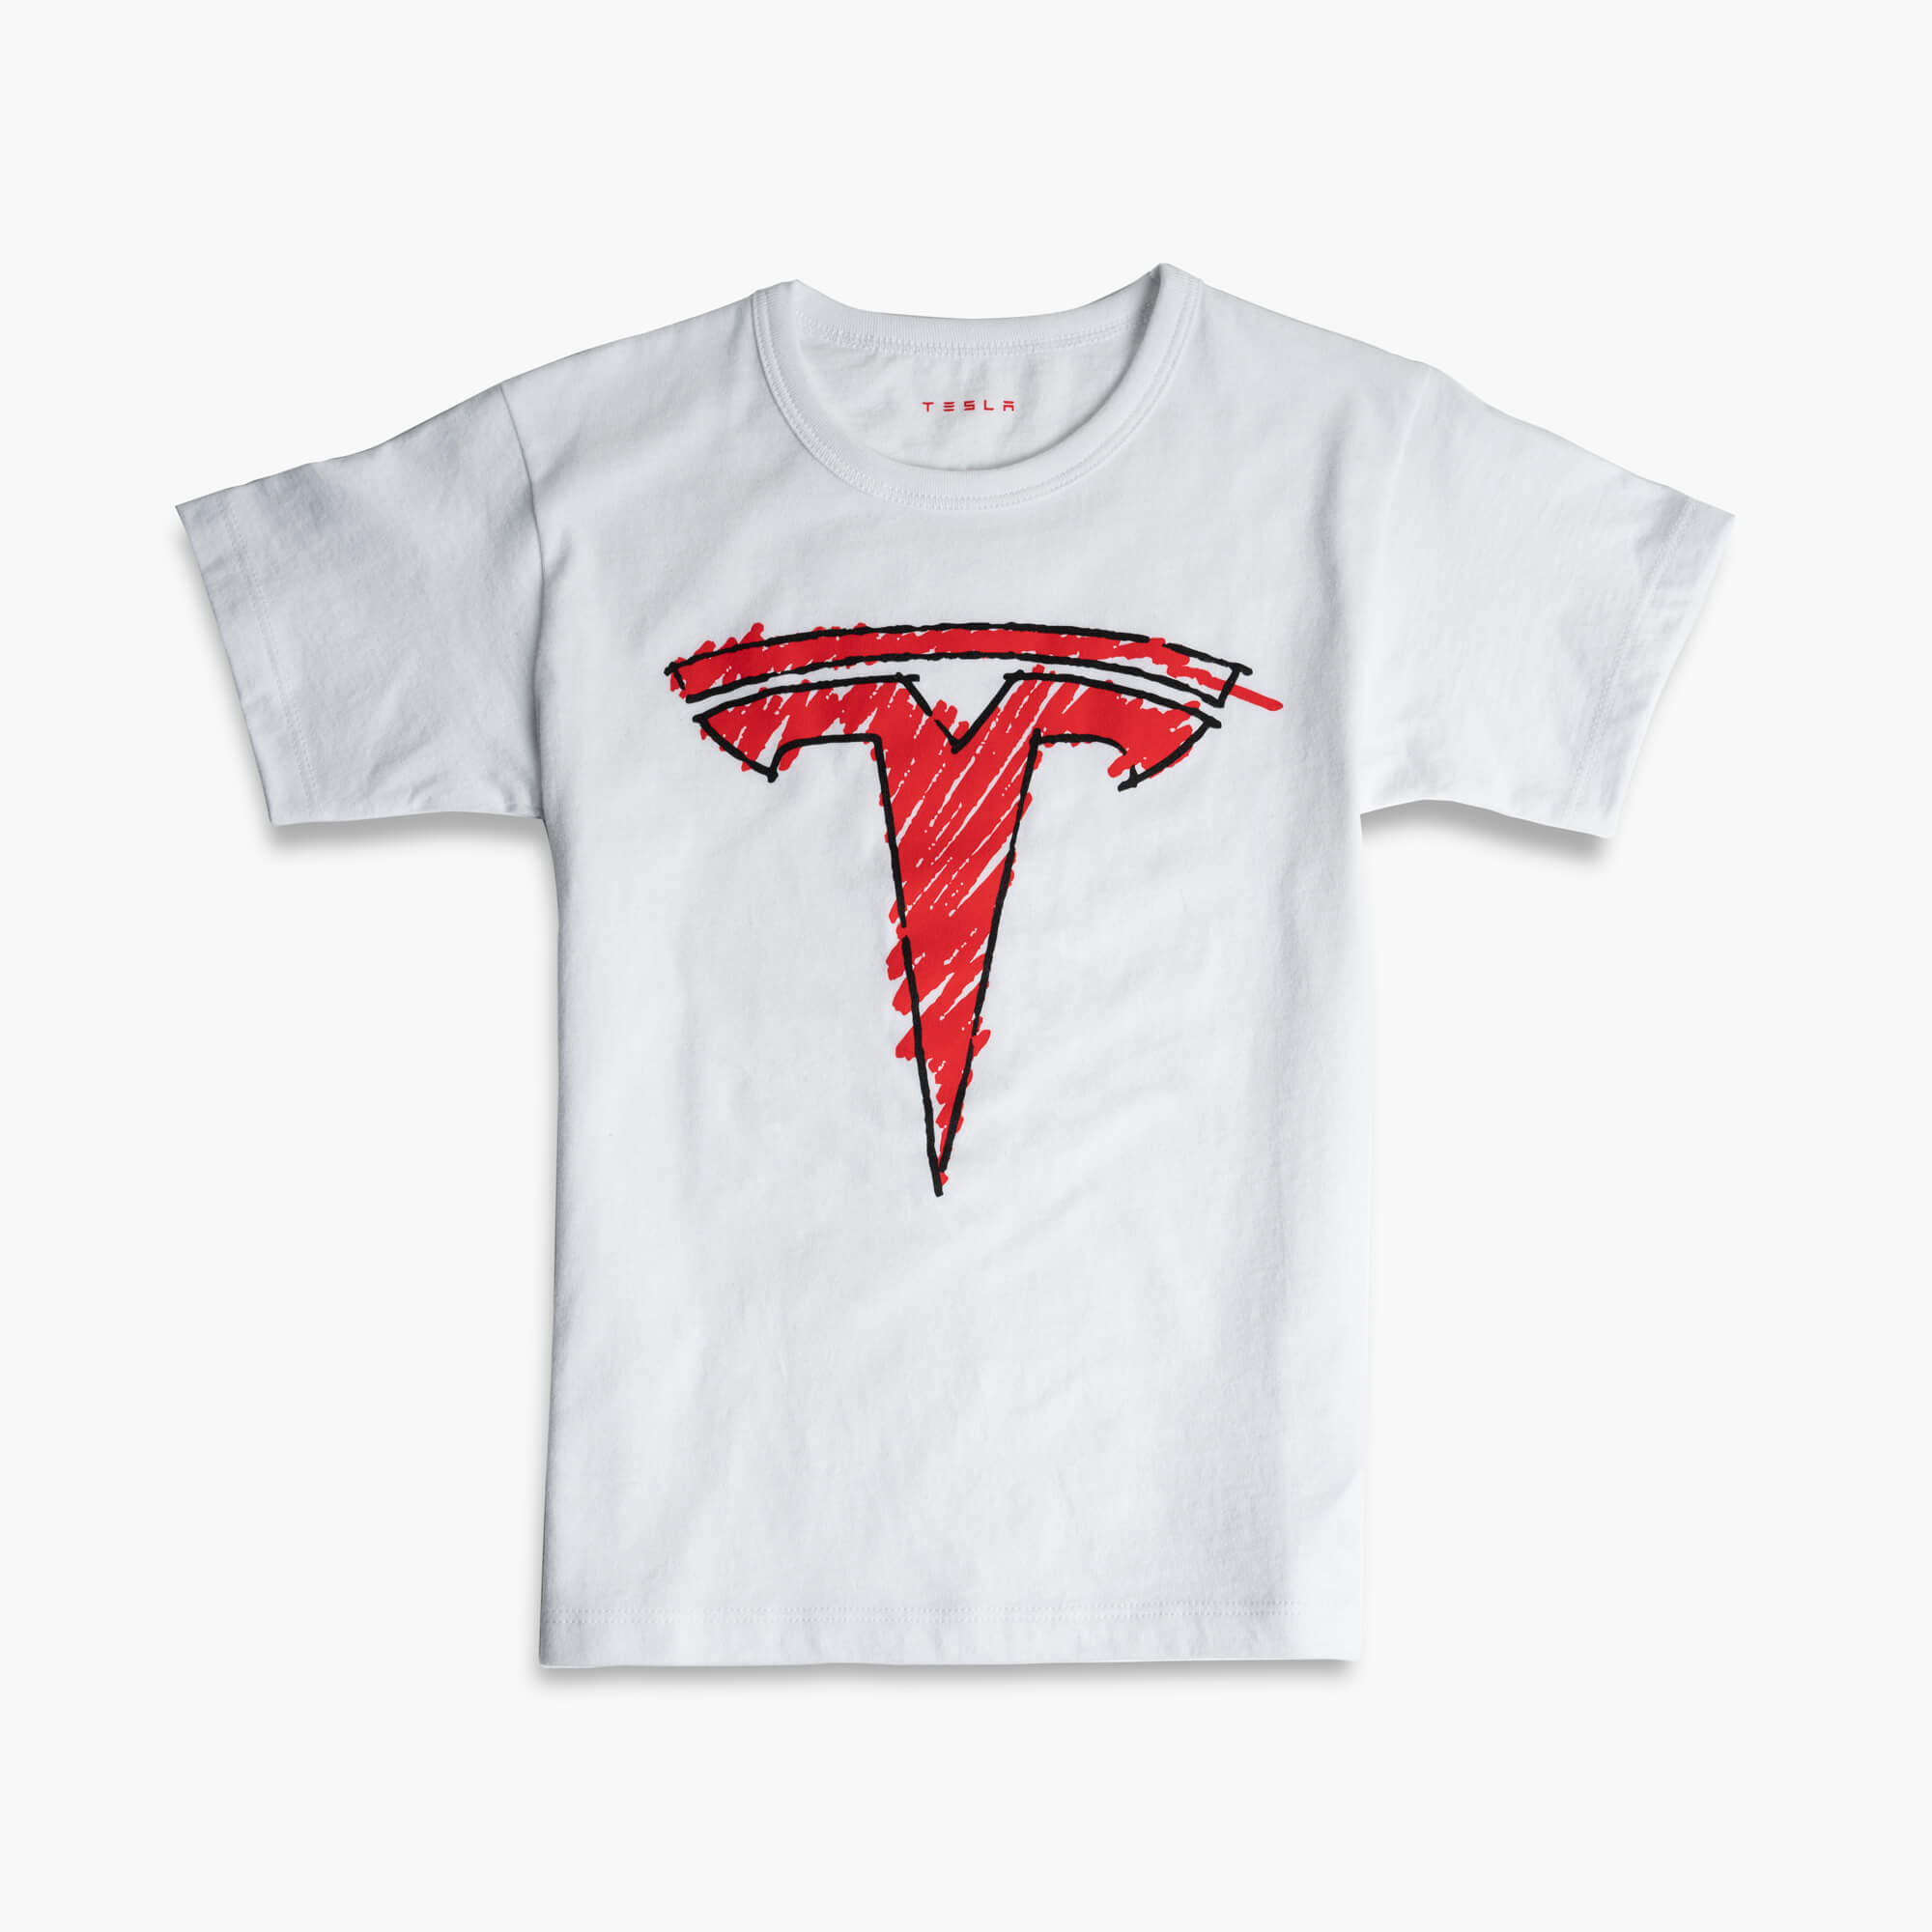 Kinder-T-Shirt mit gekritzeltem T-Logo